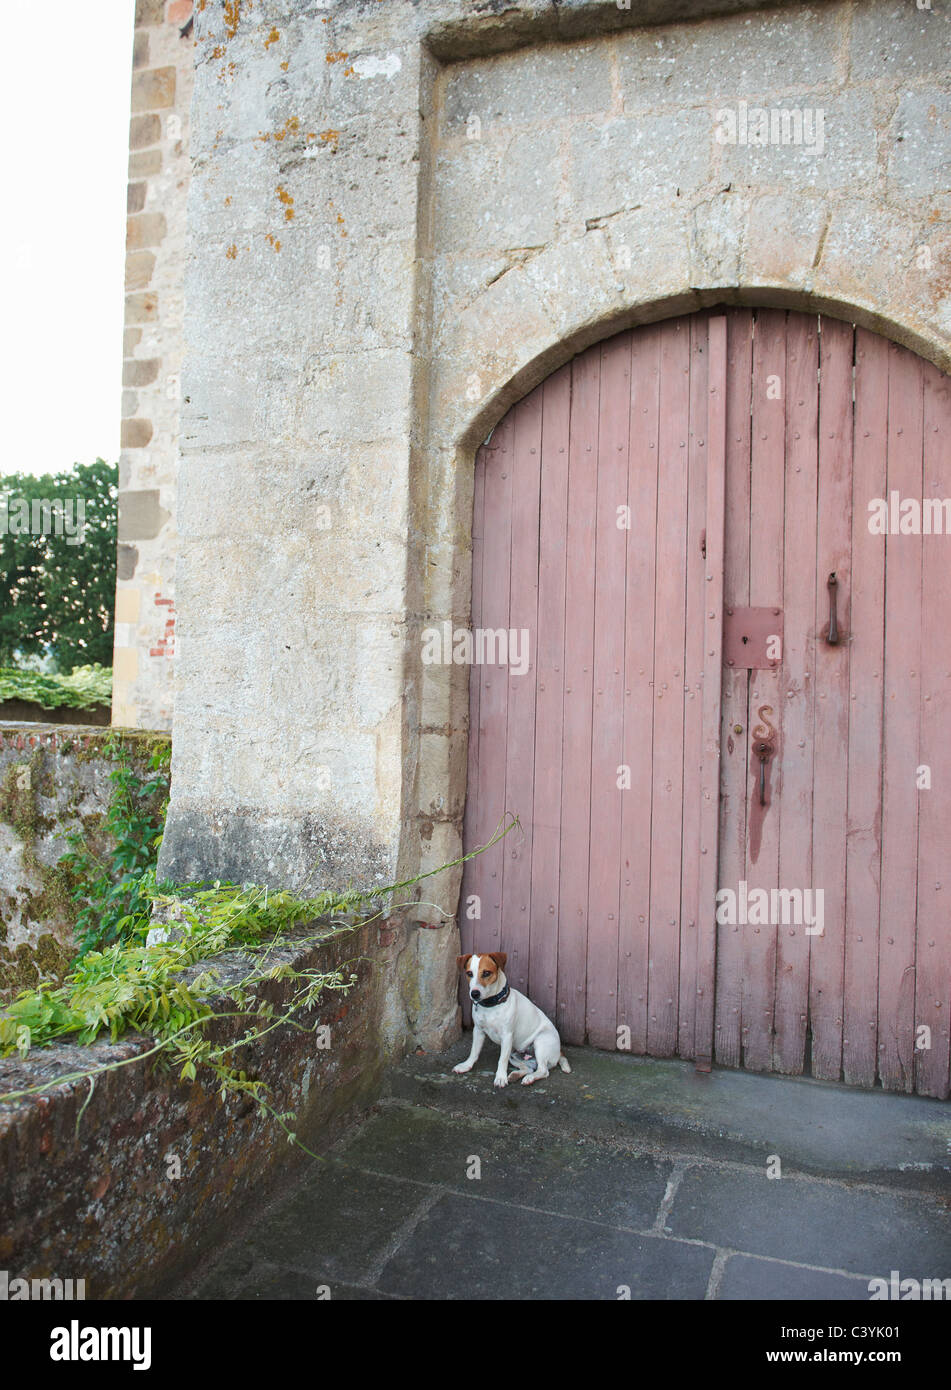 Cane seduto di fronte a porte chiuse Foto Stock